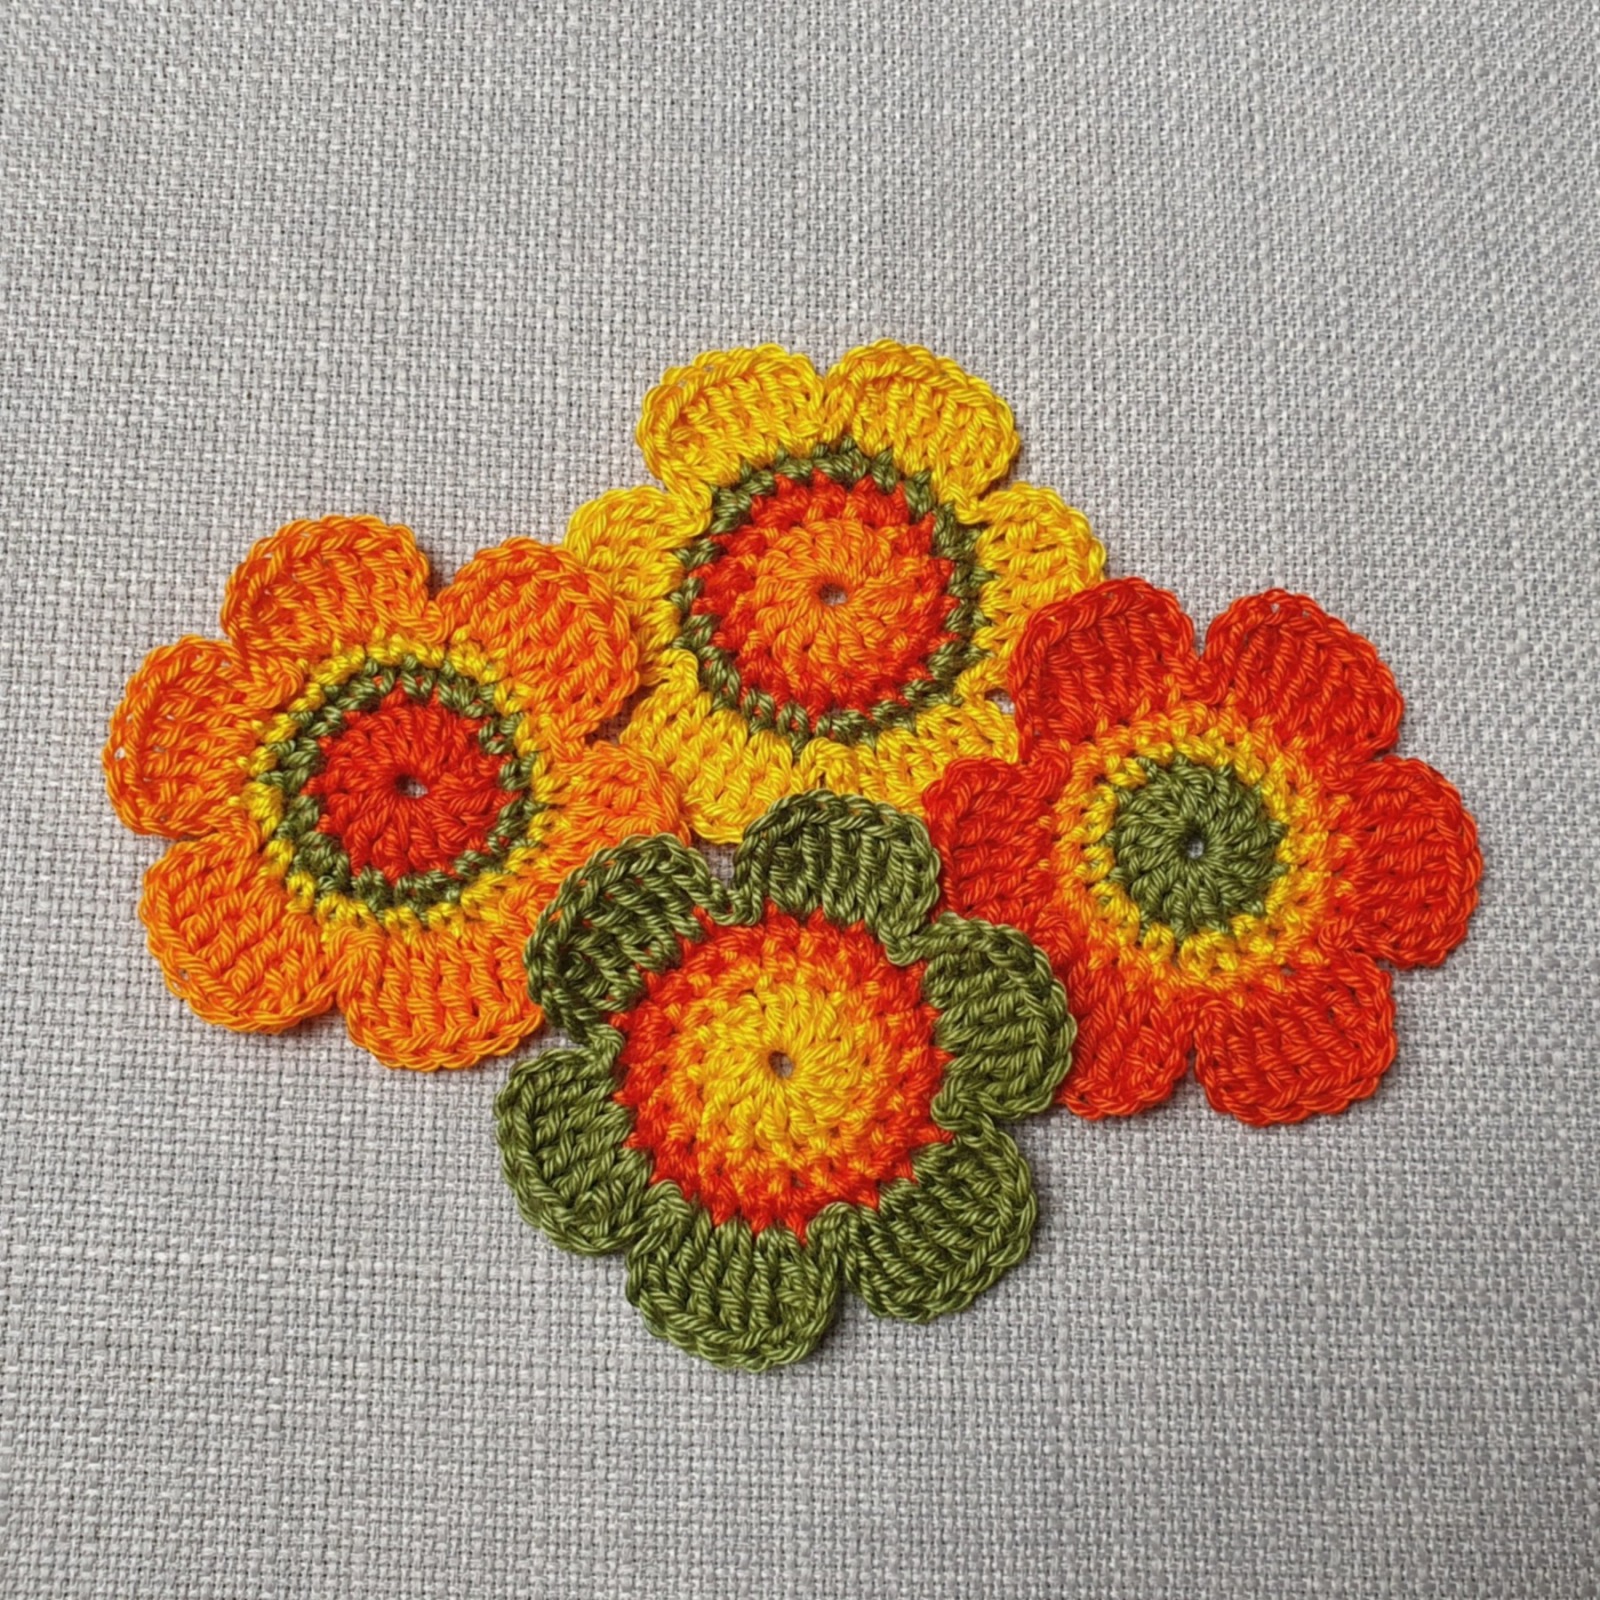 4er-Set Häkelblumen in sonnigen Farben - 6 cm groß